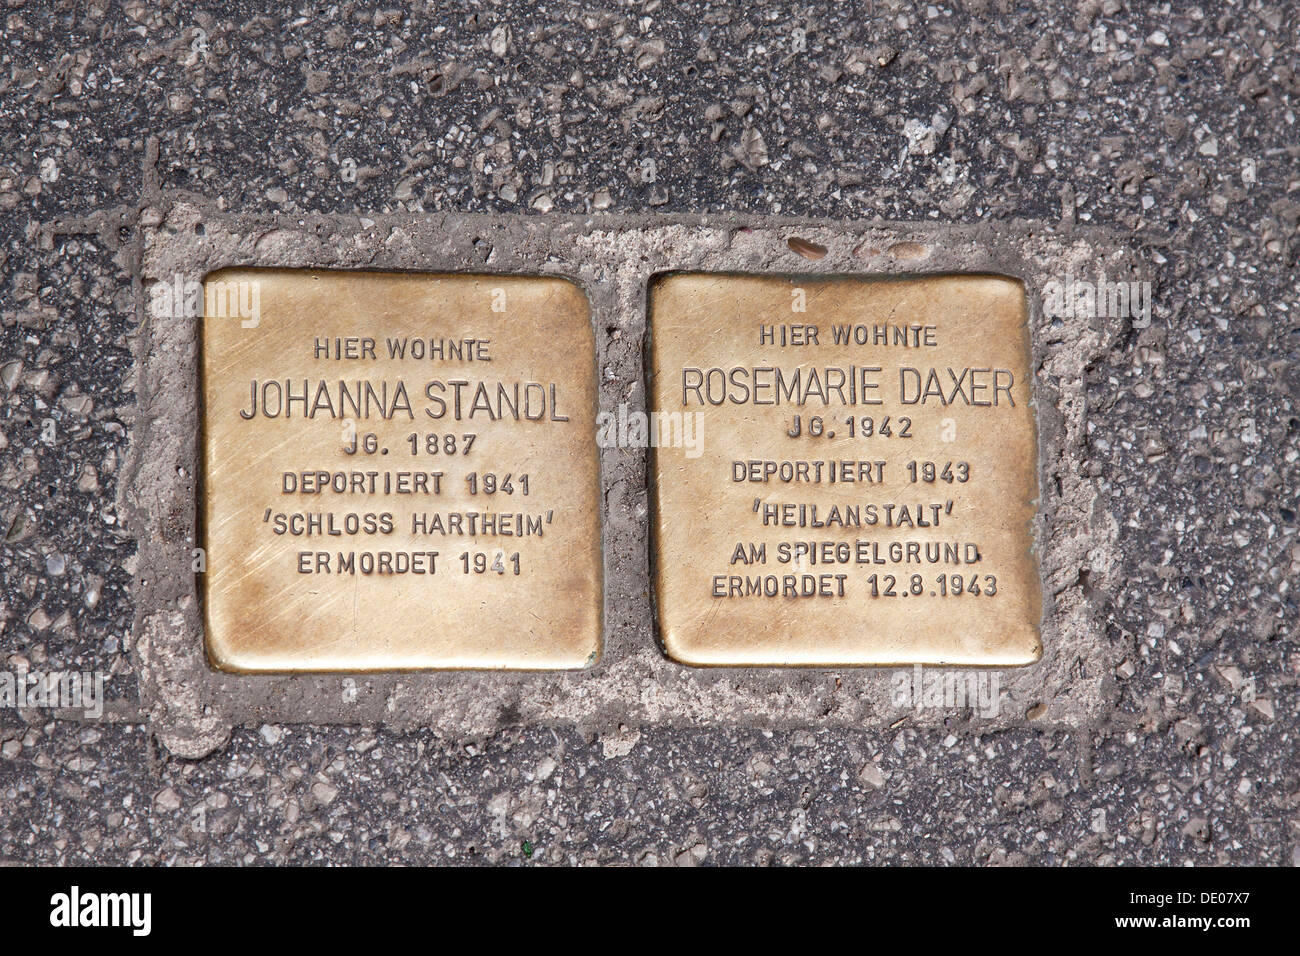 Stolperstein-Denkmal, Deutsch für stolpern zu blockieren, Frau 1941 in Schloss Hartheim, ermordet 1941 deportiert und ein Mädchen, 1, Stockfoto